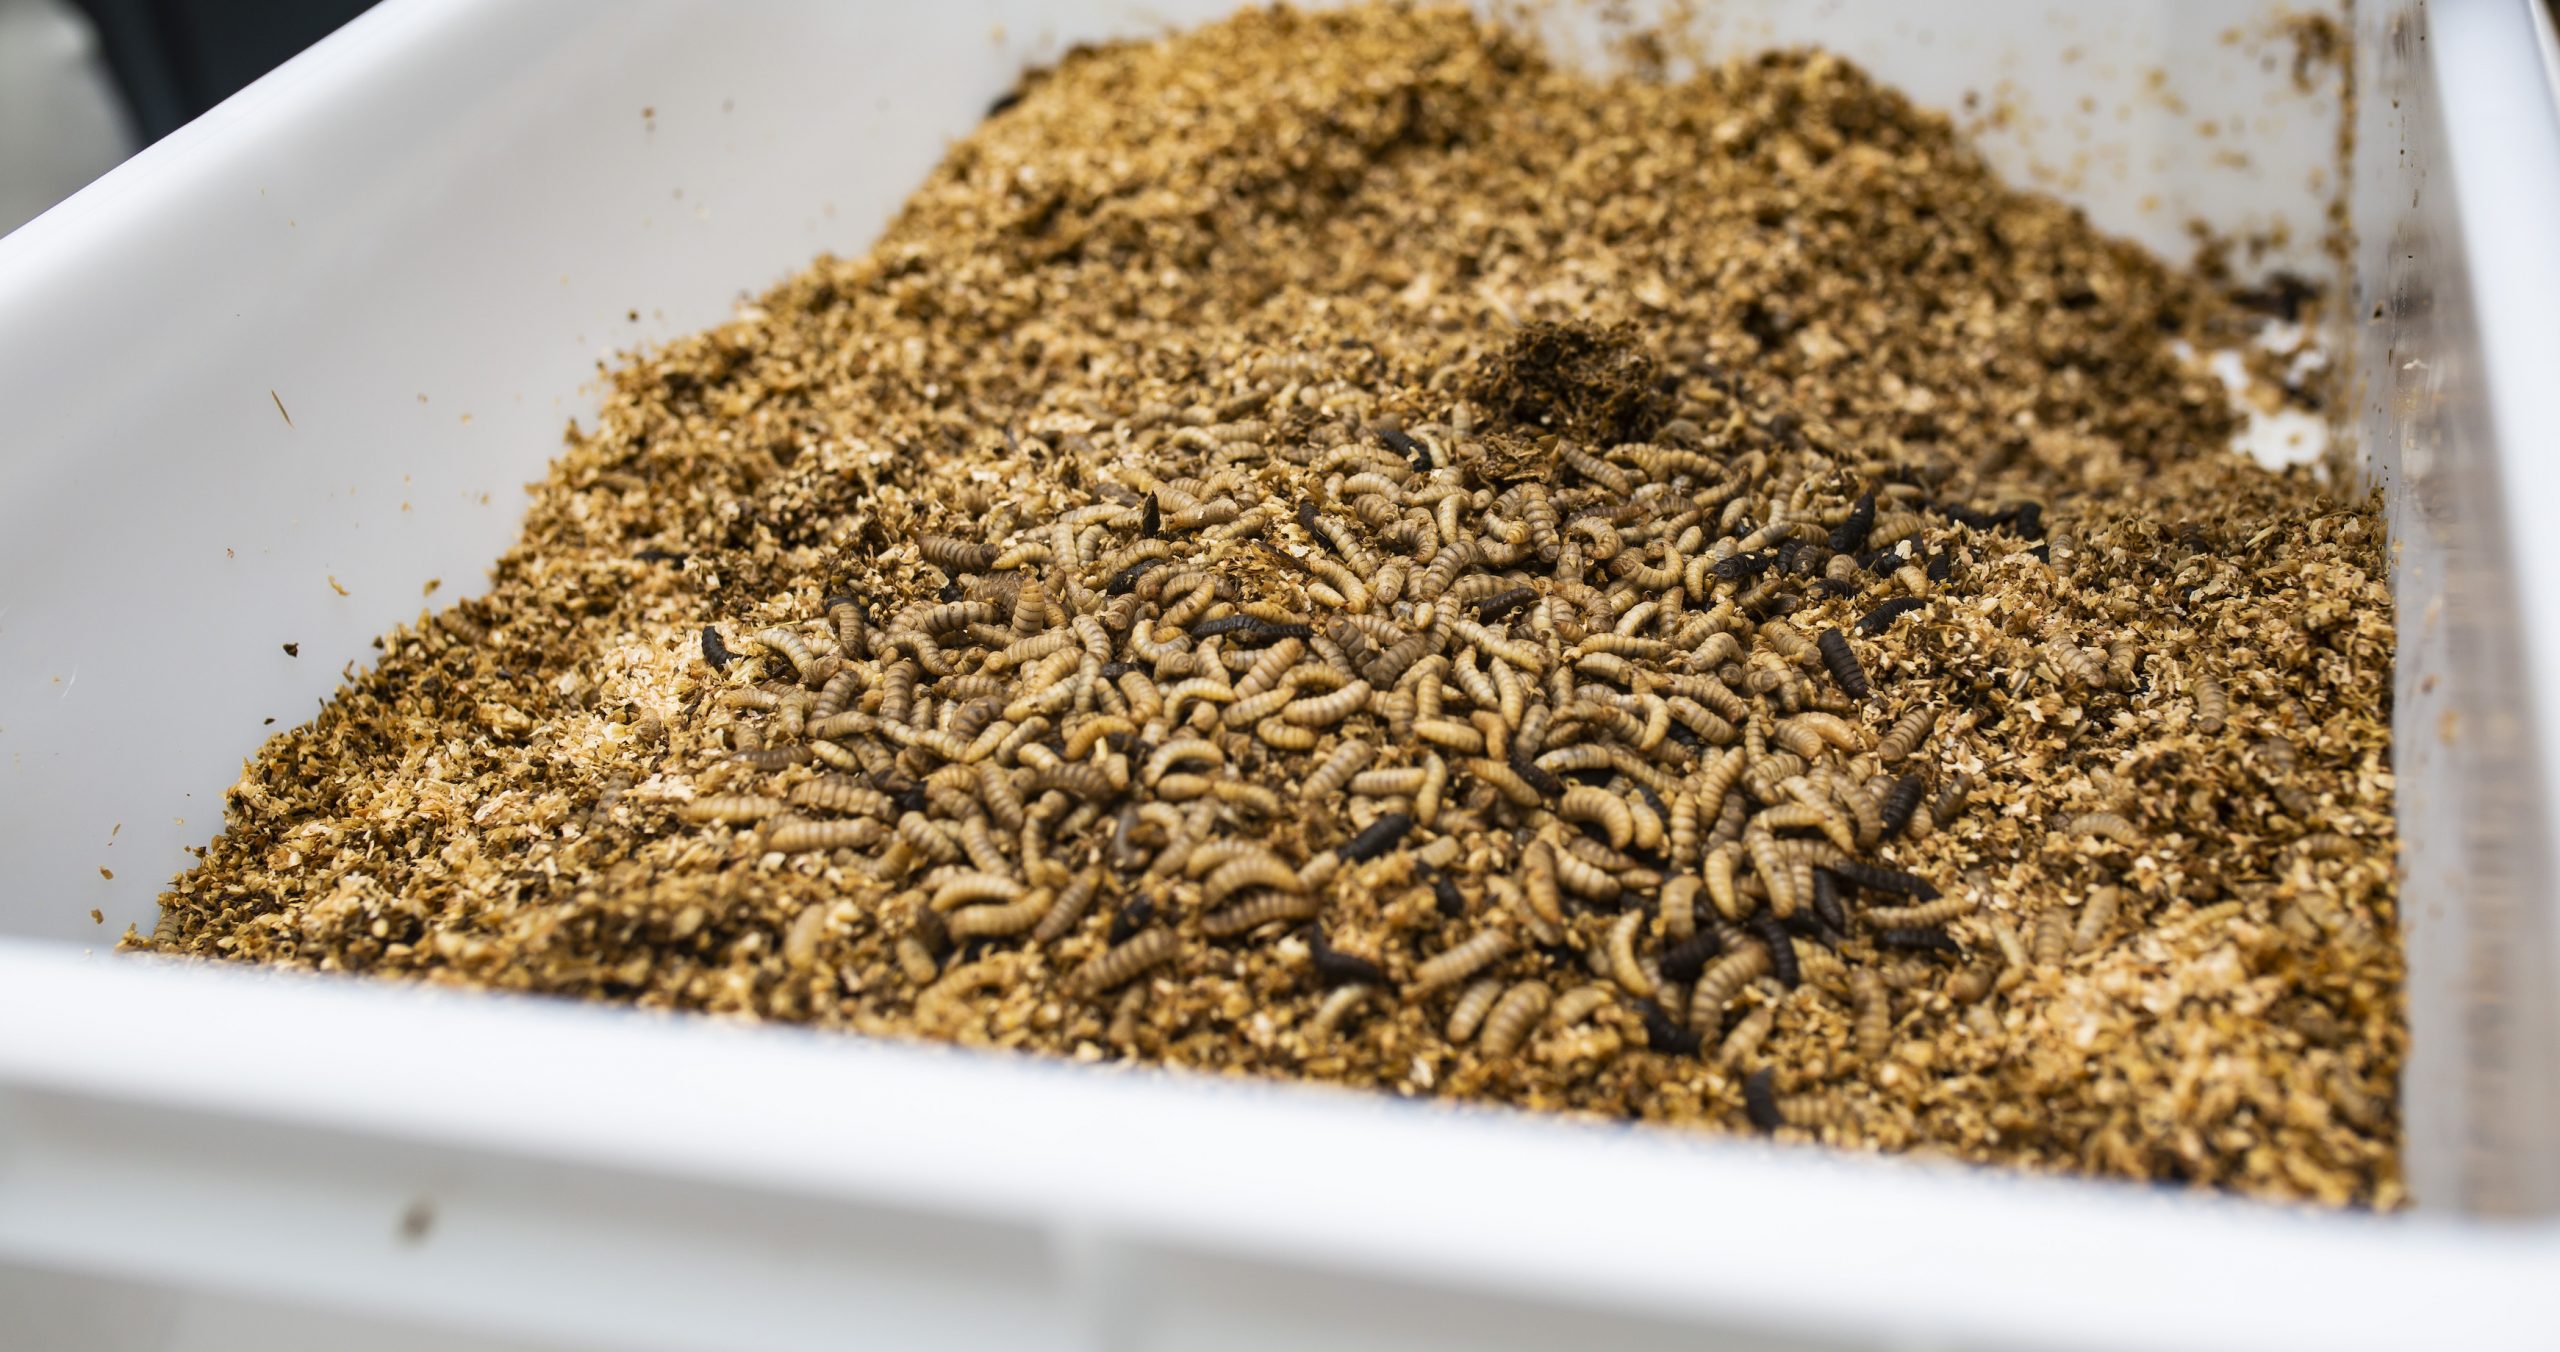 La vida de las larvas de moscas soldado negra: de comer biorresiduos al pienso de los animales